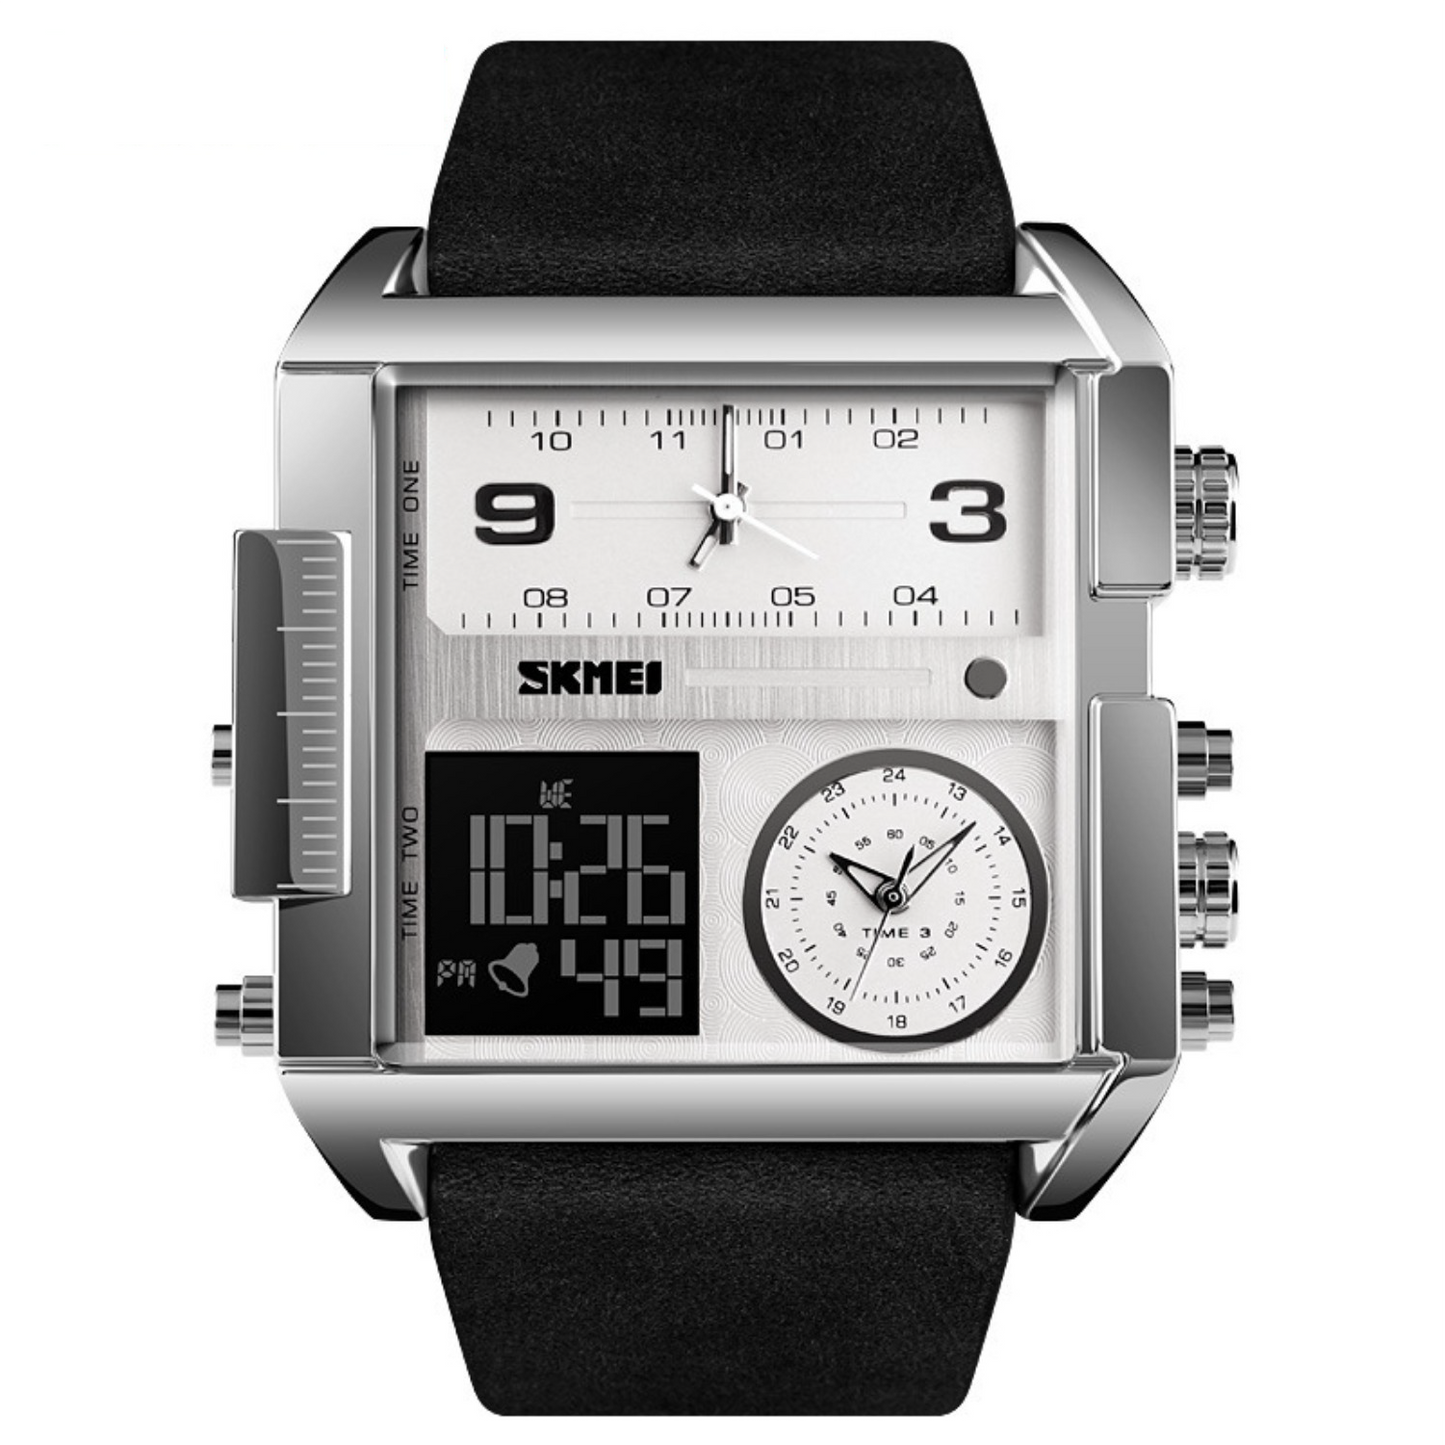 Stylish Square Electronic Watch